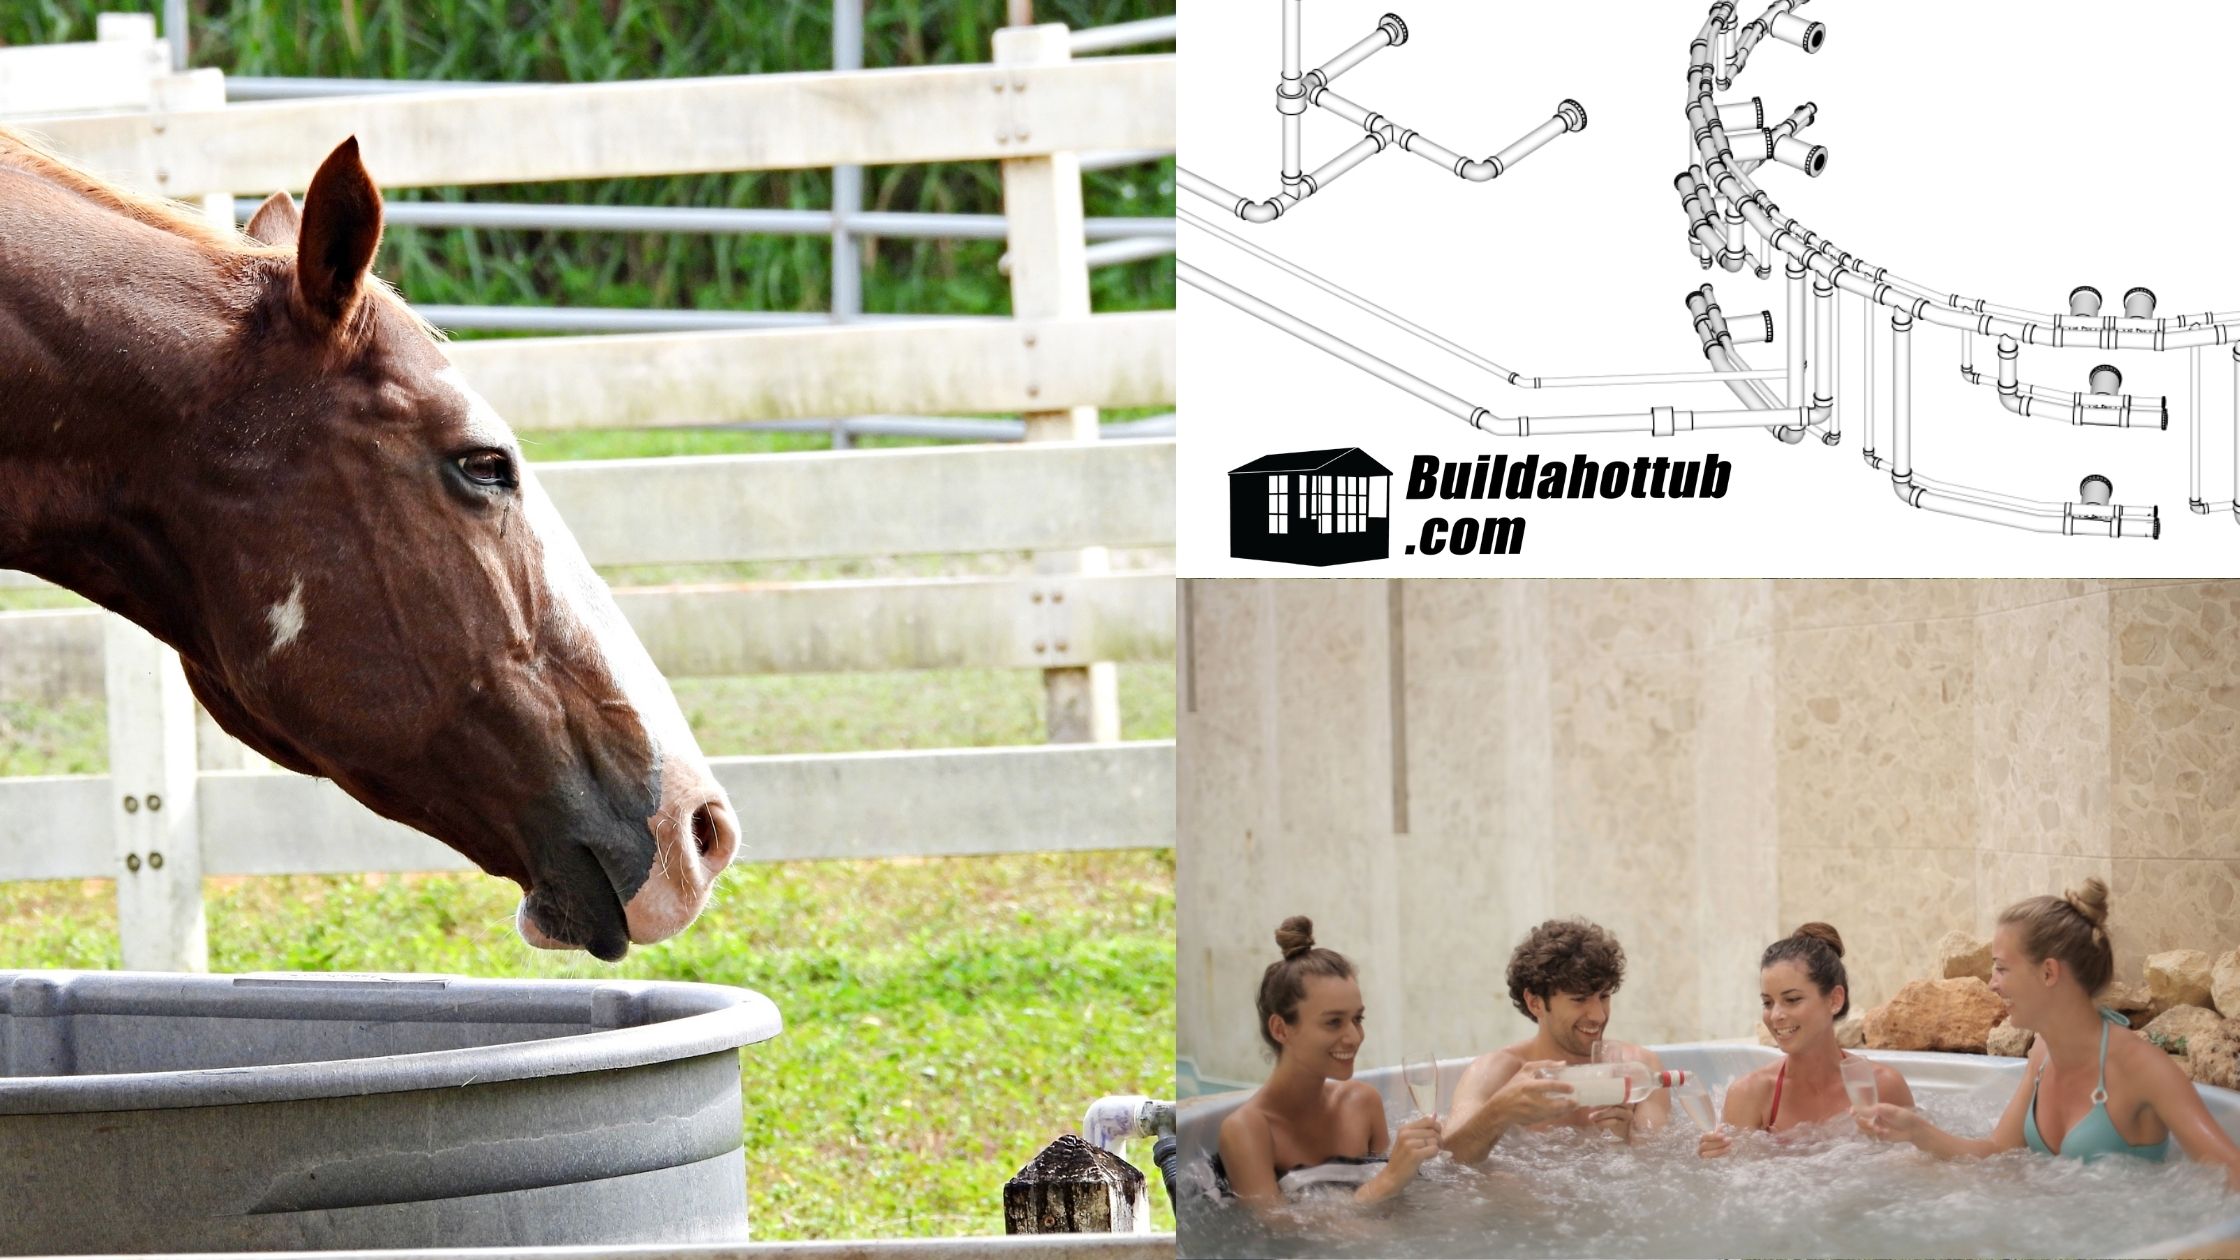 My horse trough hot tub , or bathtub? : r/redneckengineering